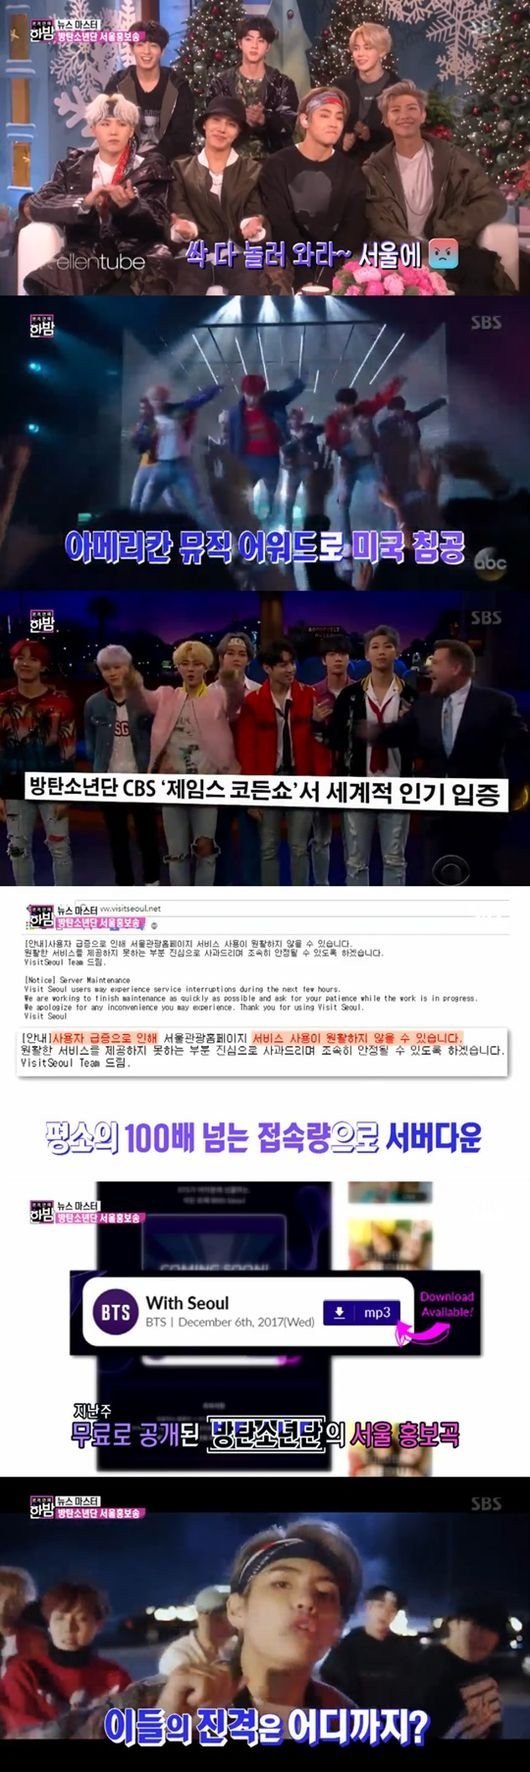 Как огромная сила BTS повлияла на кампанию I.SEOUL.U в текущем году?